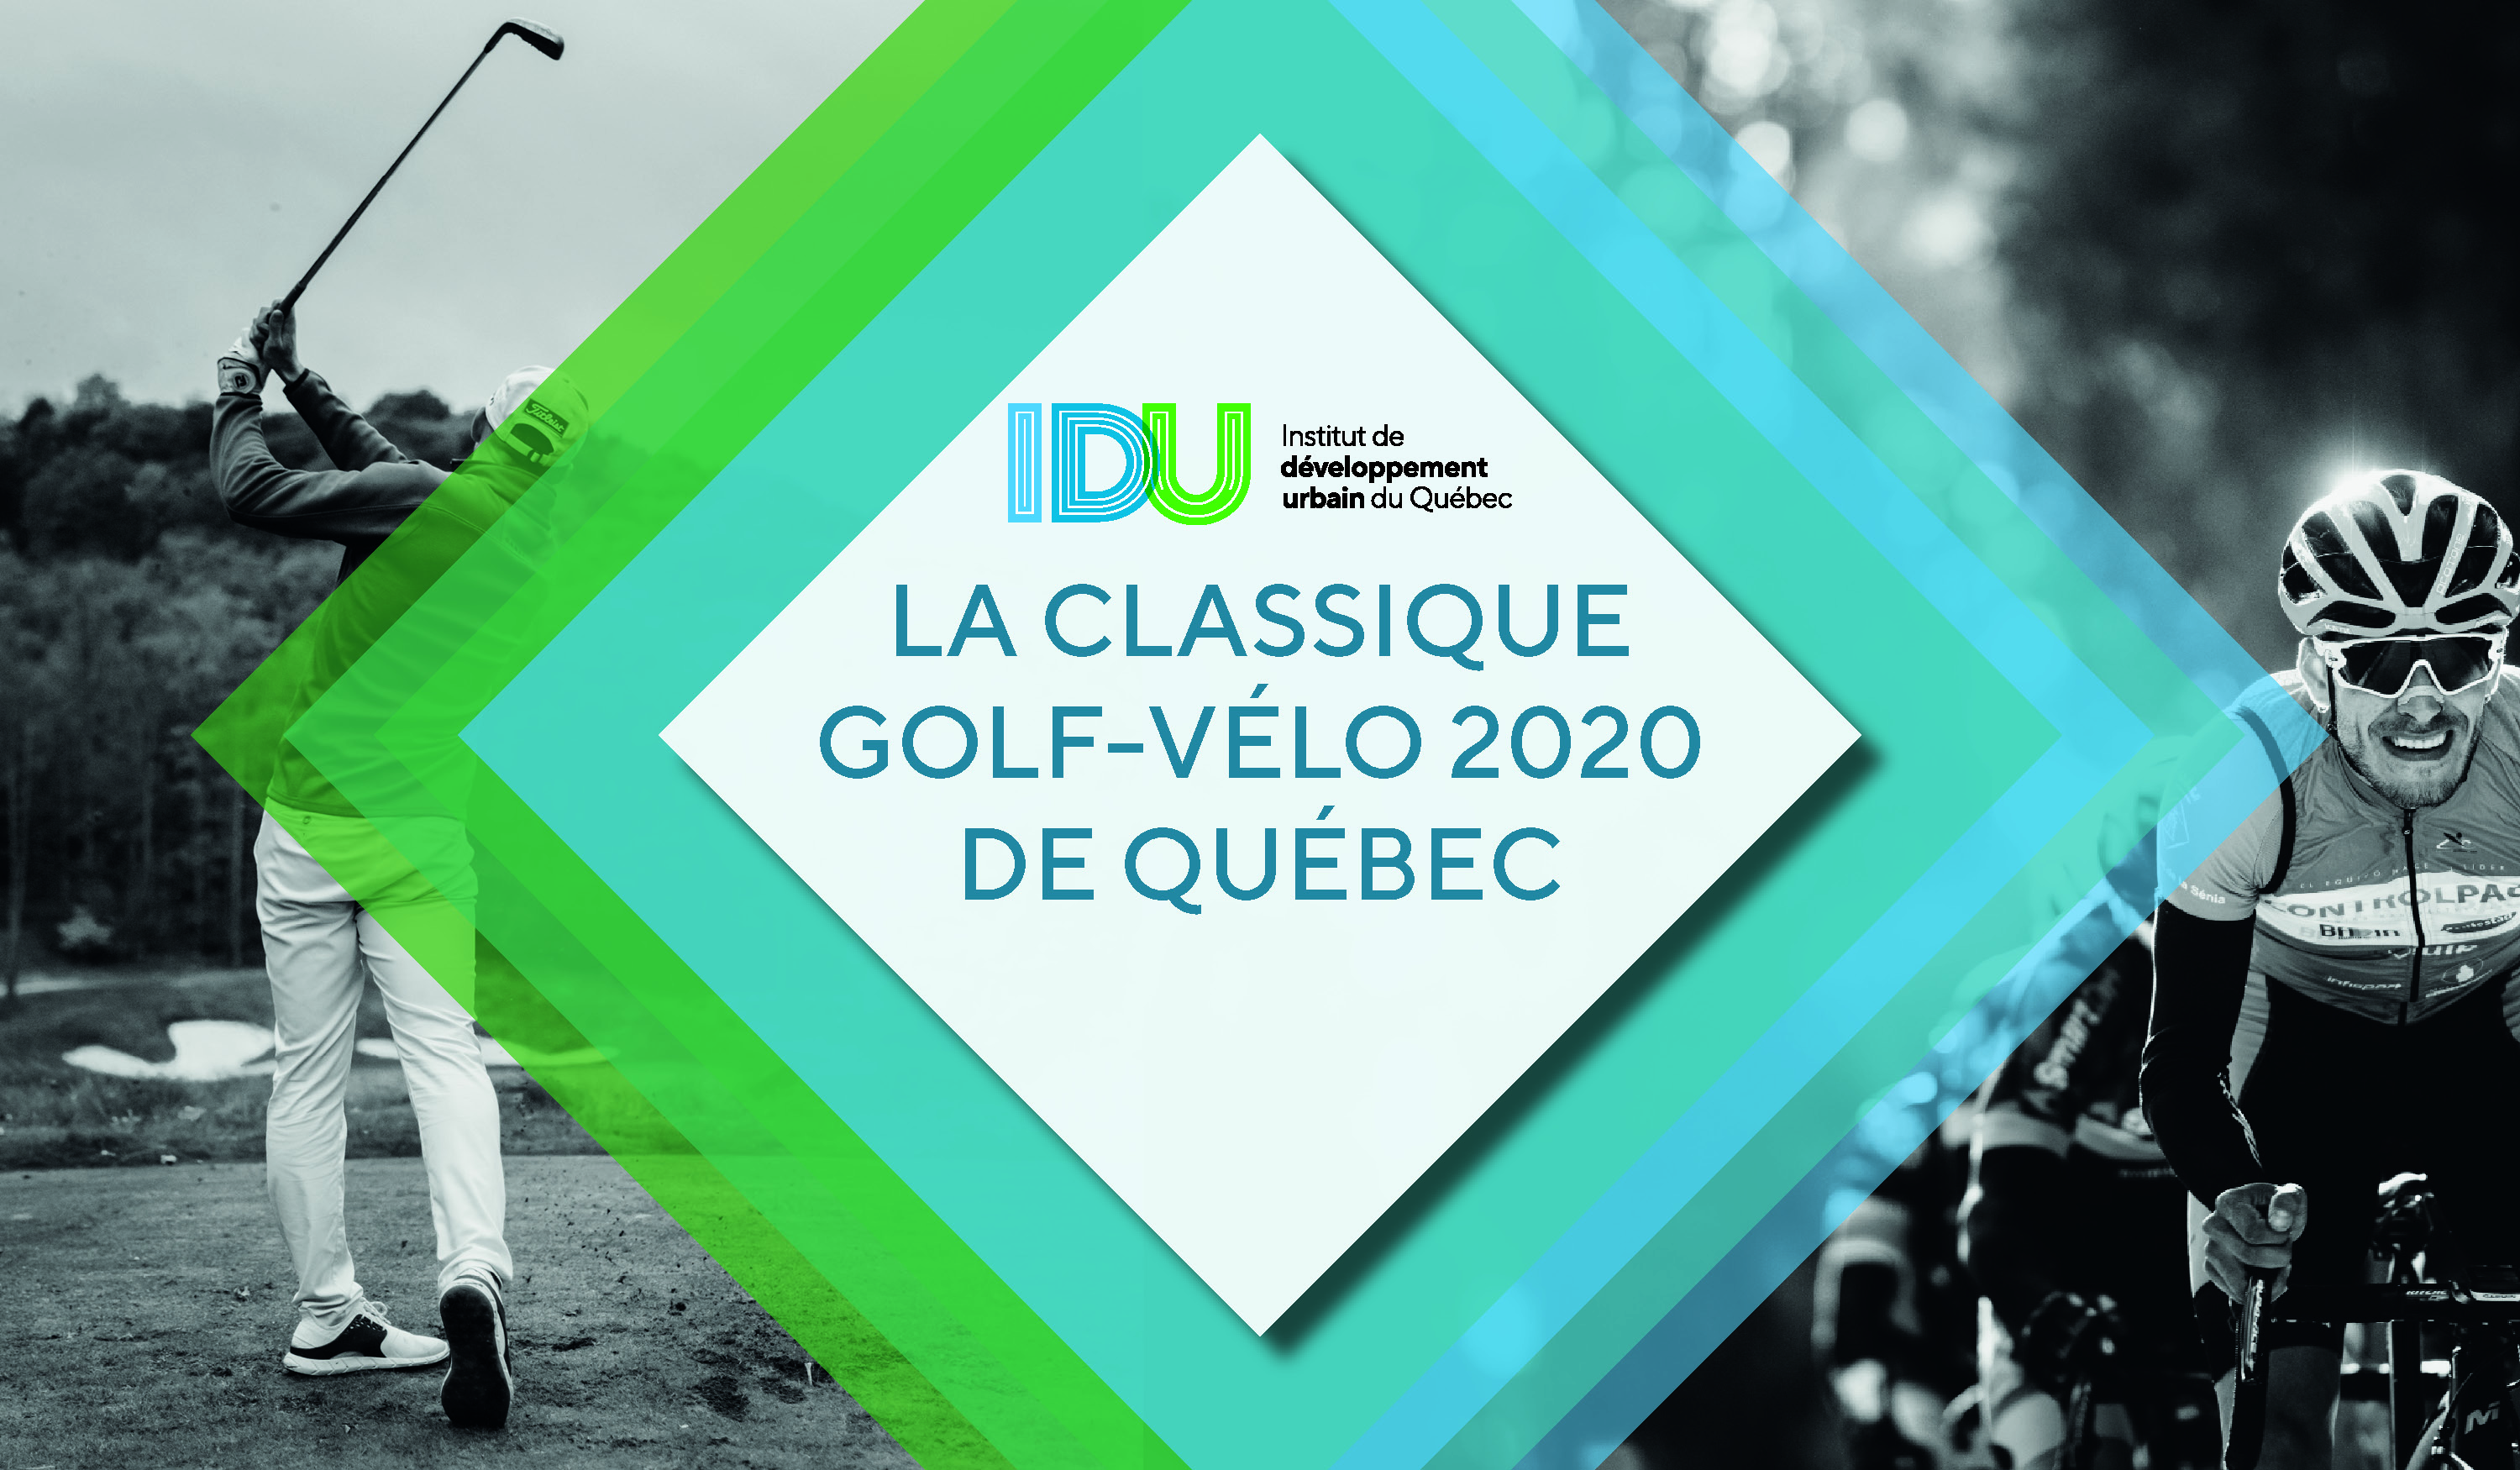 La Classique Golf-Vélo 2020 de Québec